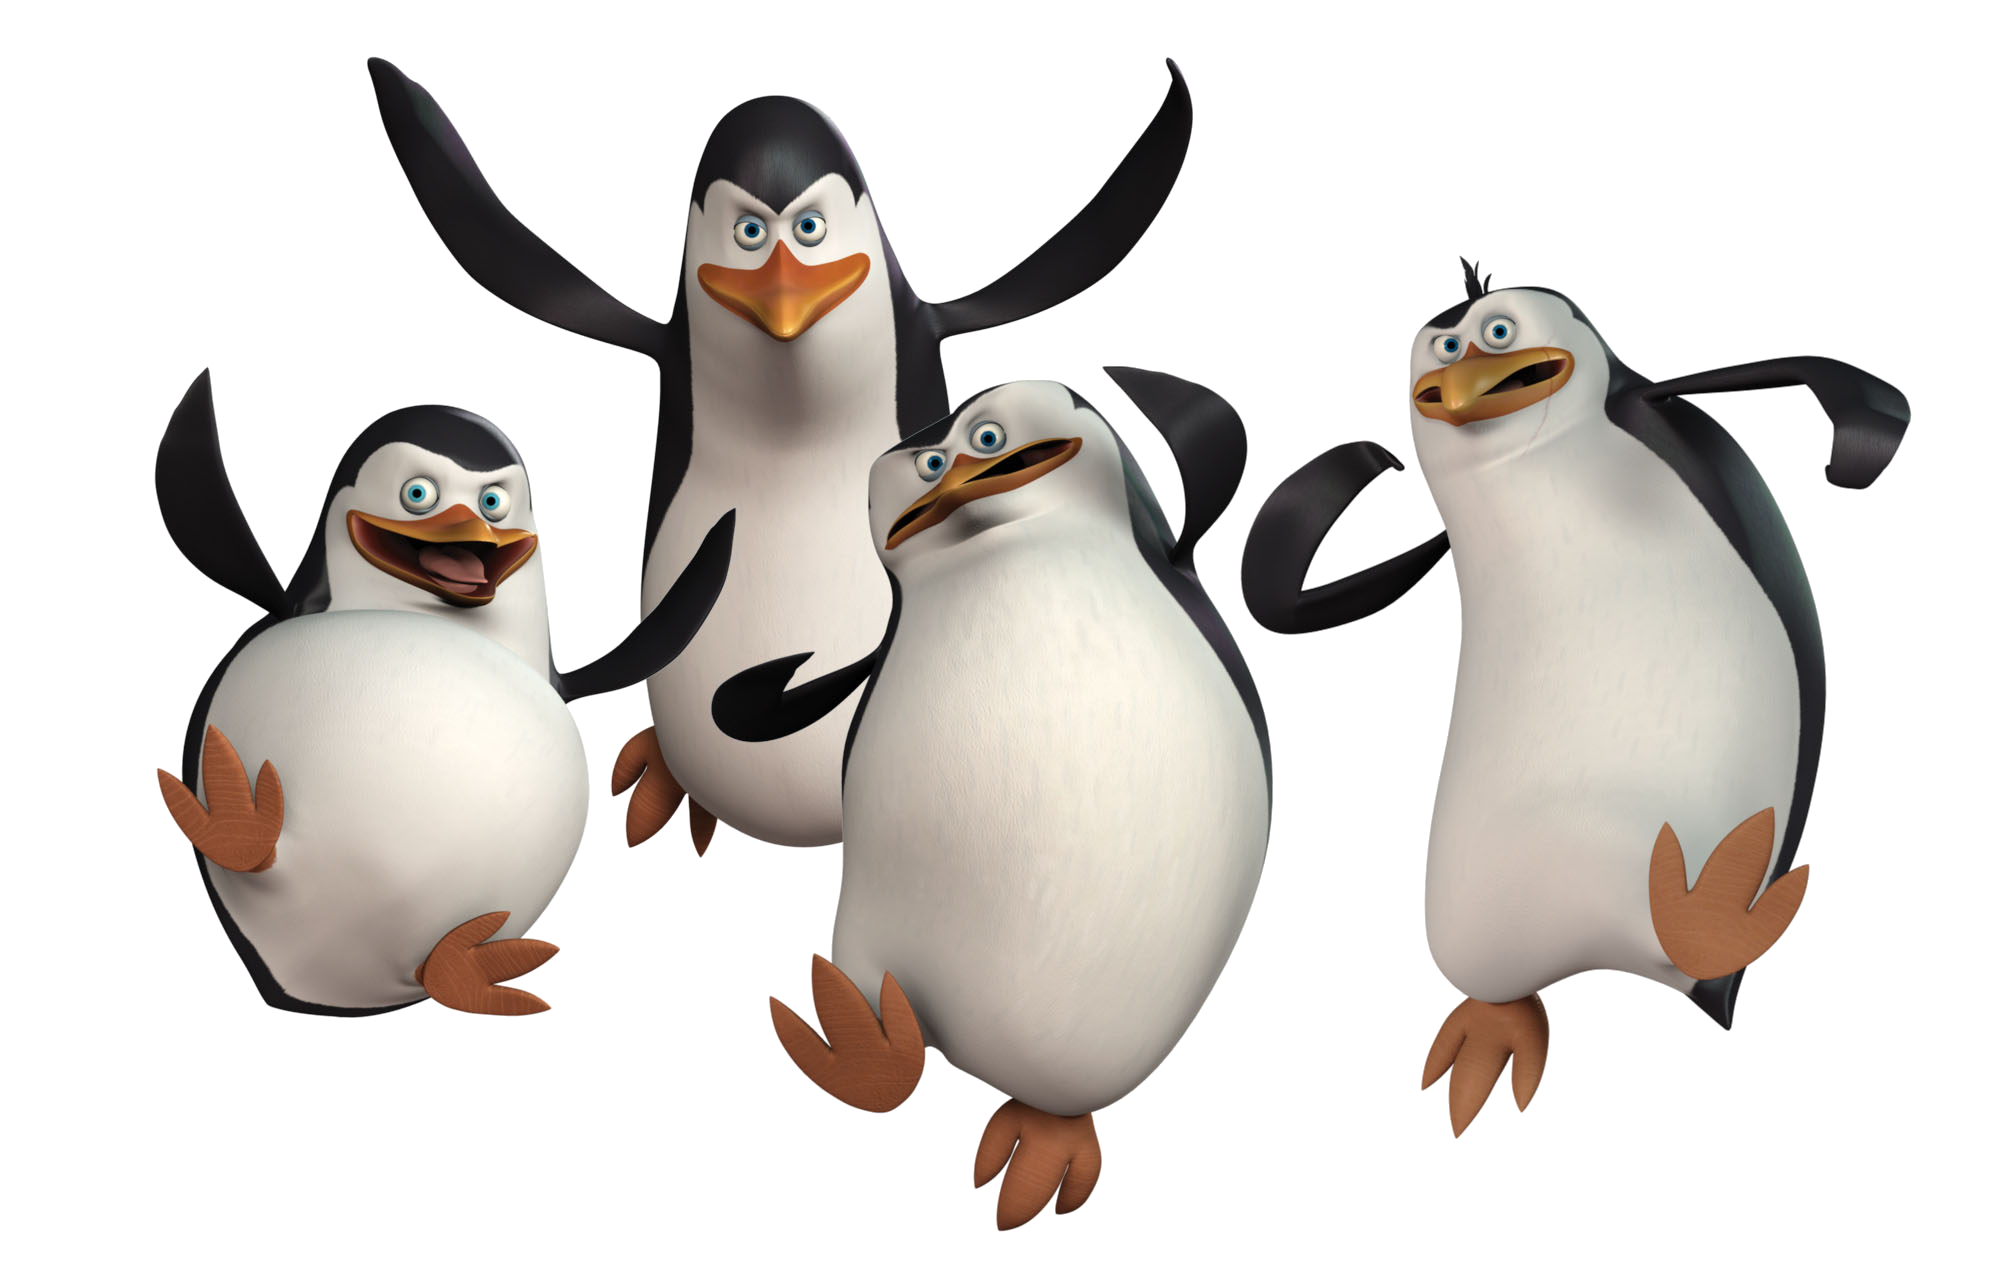 Download PNG image: Penguins PNG image, Madagascar penguins PNG image